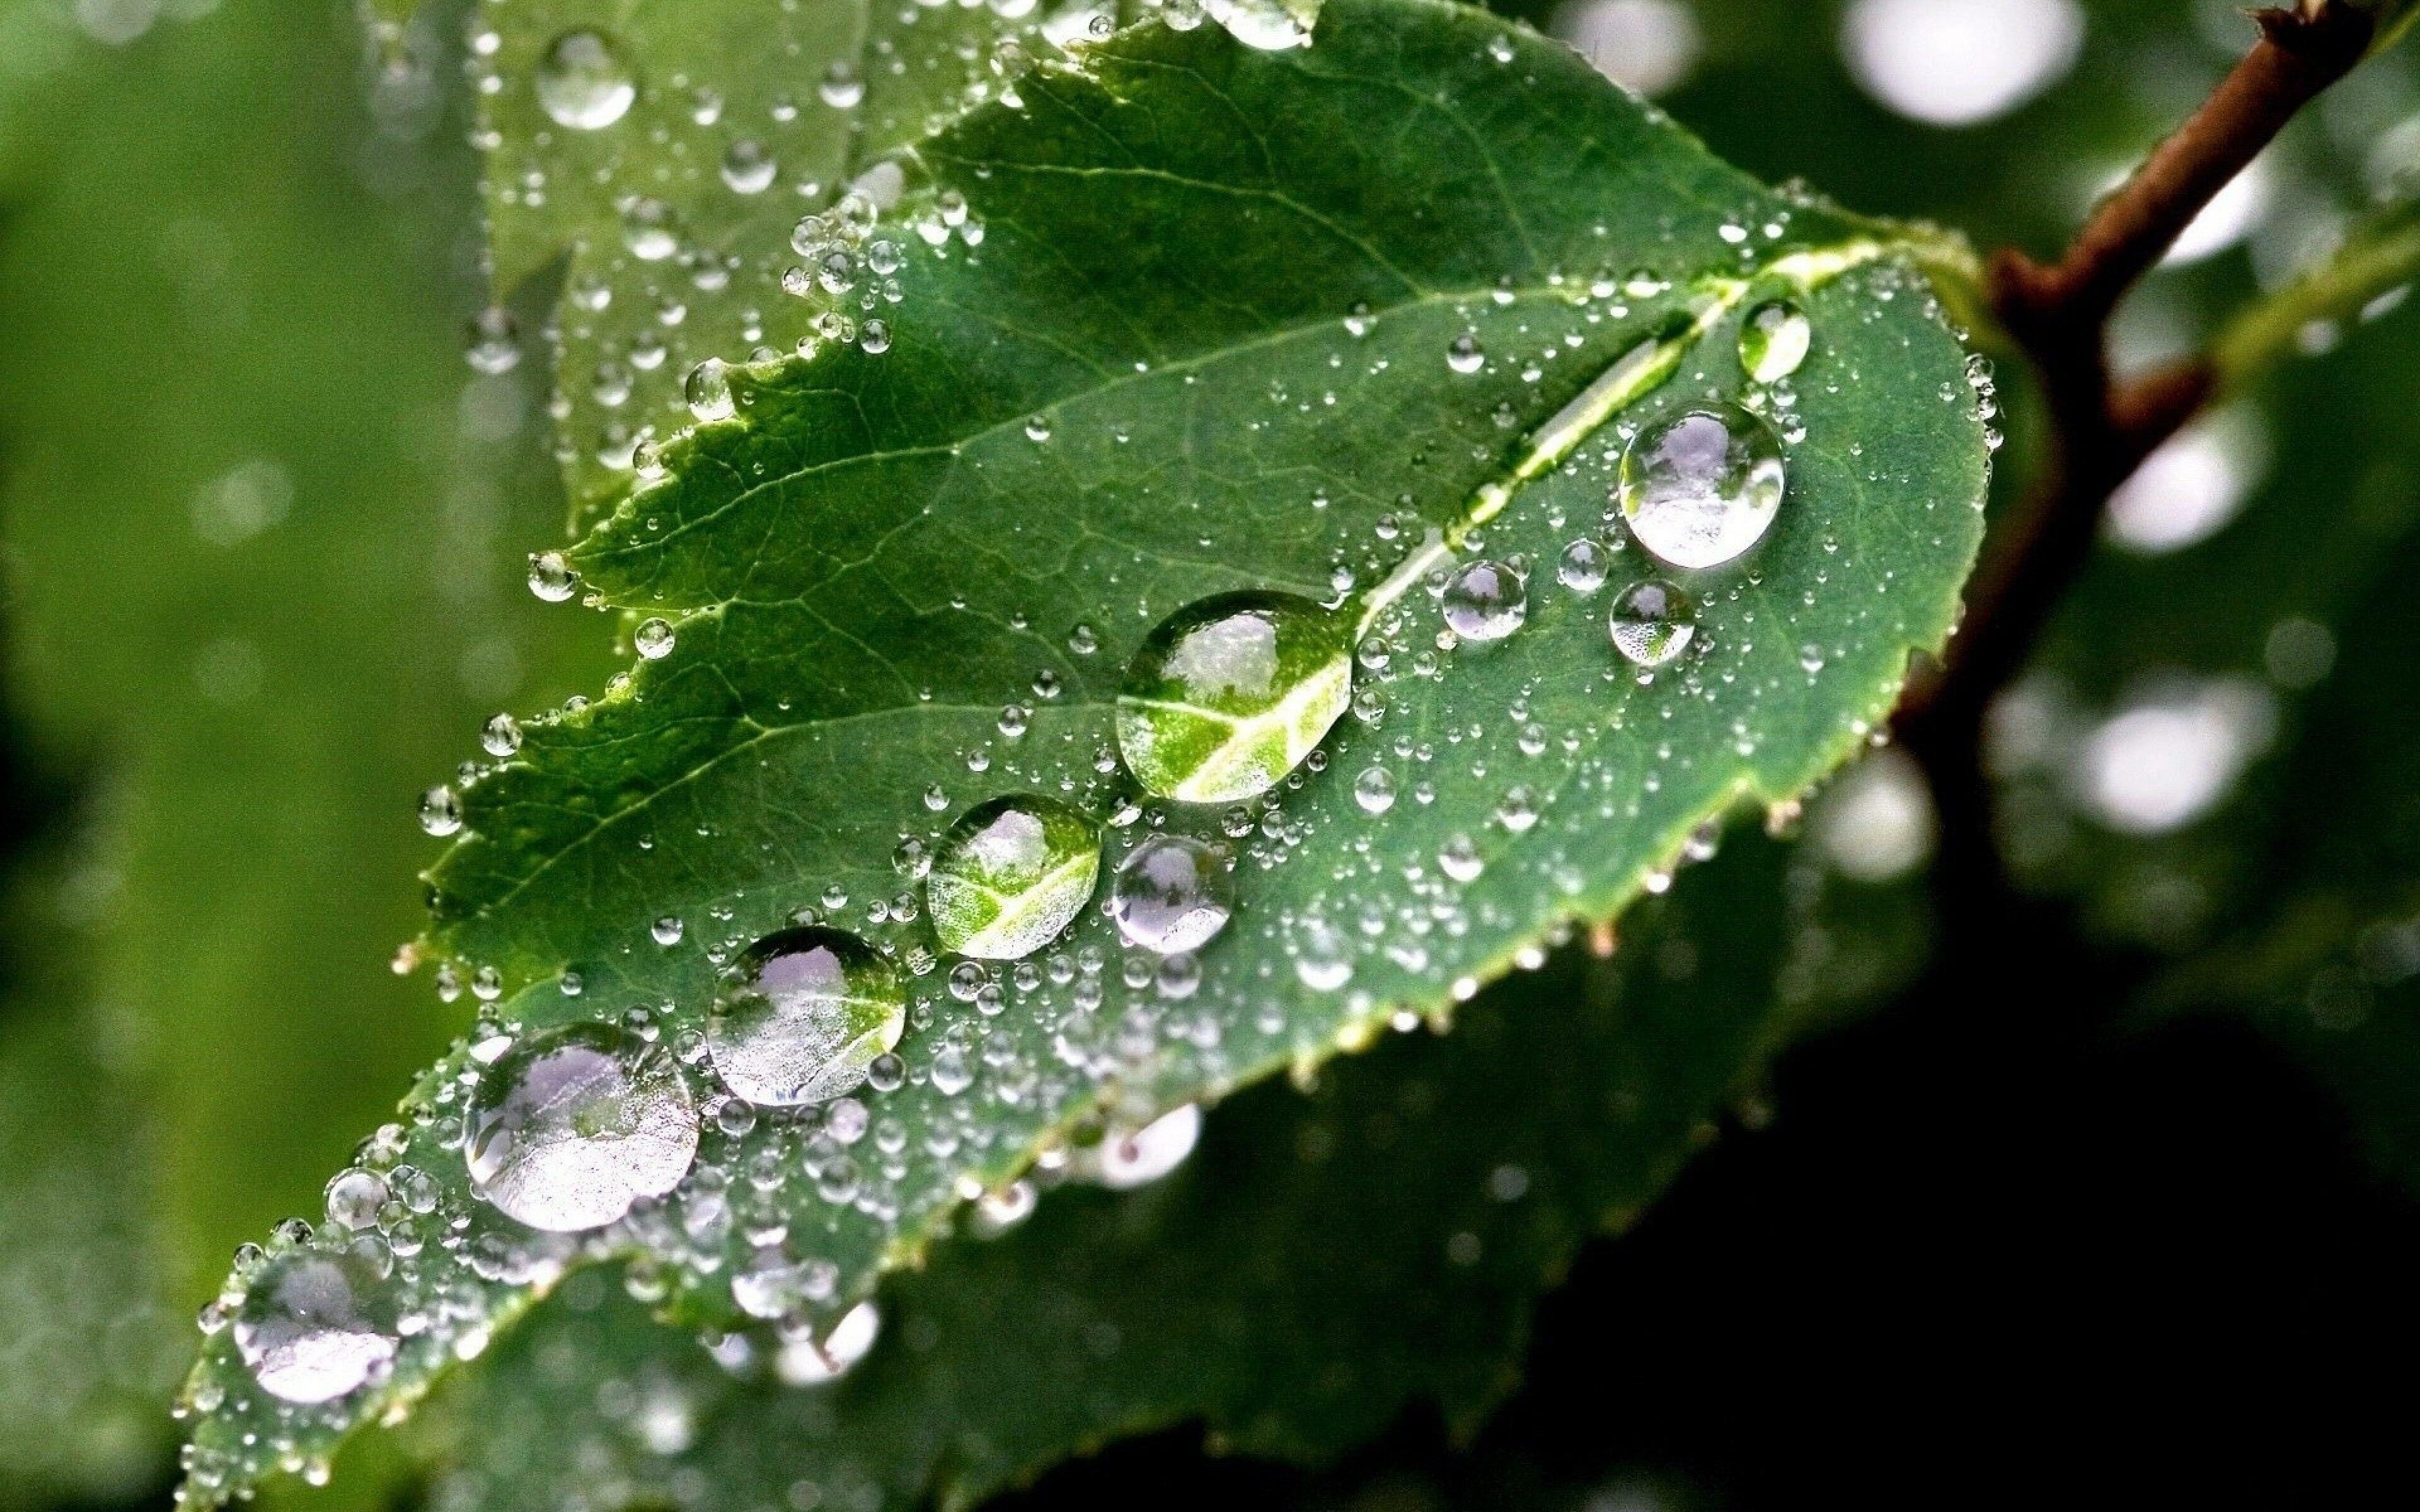 Капельки росы сверкали на зеленой. Капли воды на листьях. Капли дождя. Роса на листьях. Как пли воды натлистьях.